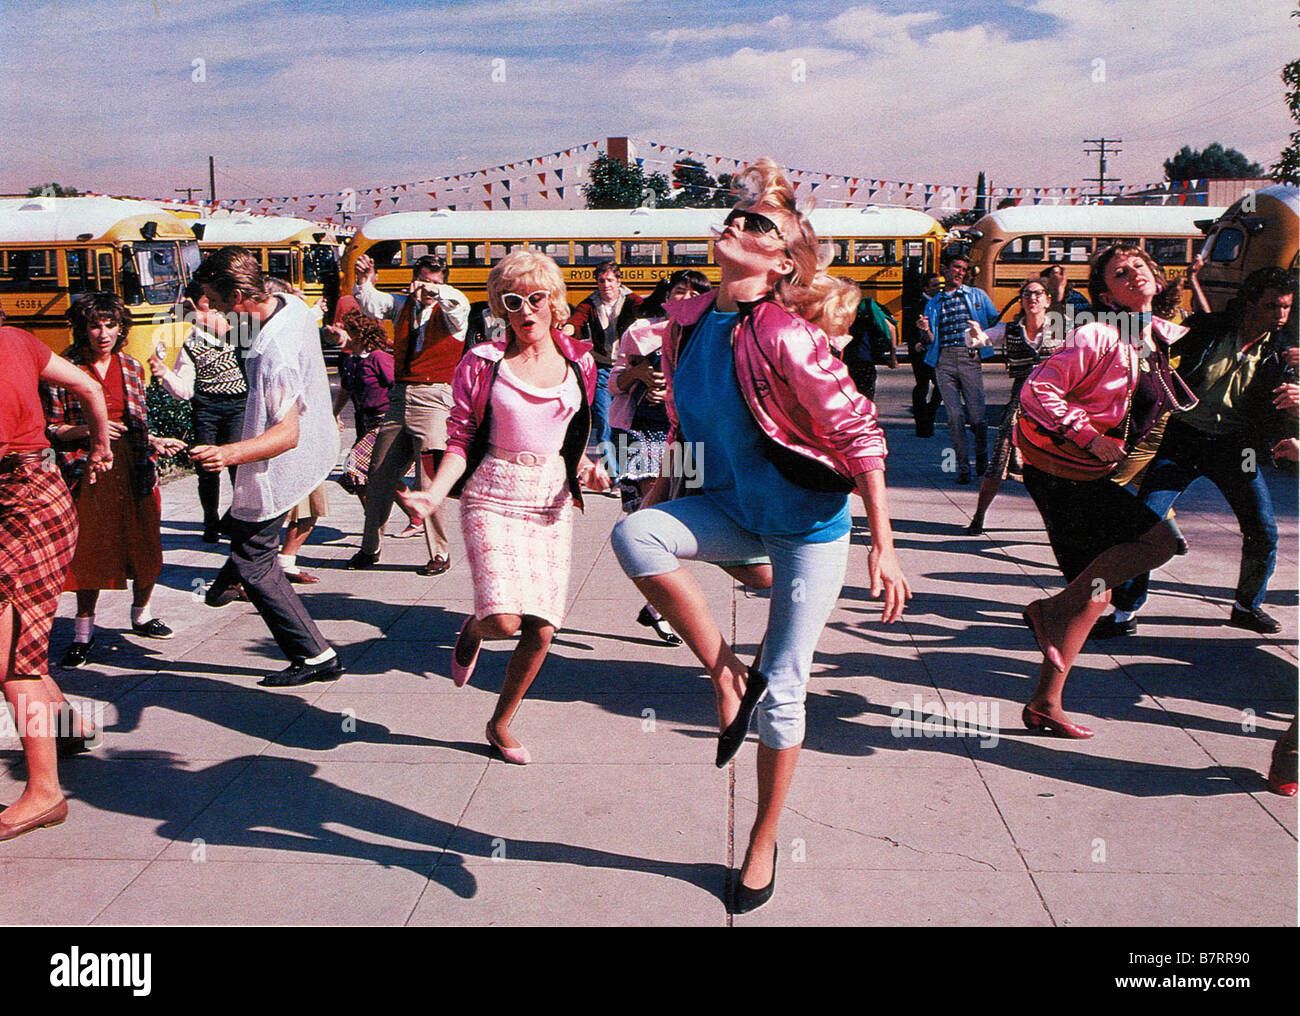 II grasso grasso 2 Anno: 1982 USA Michelle Pfeiffer direttore: Patricia Birch Foto Stock